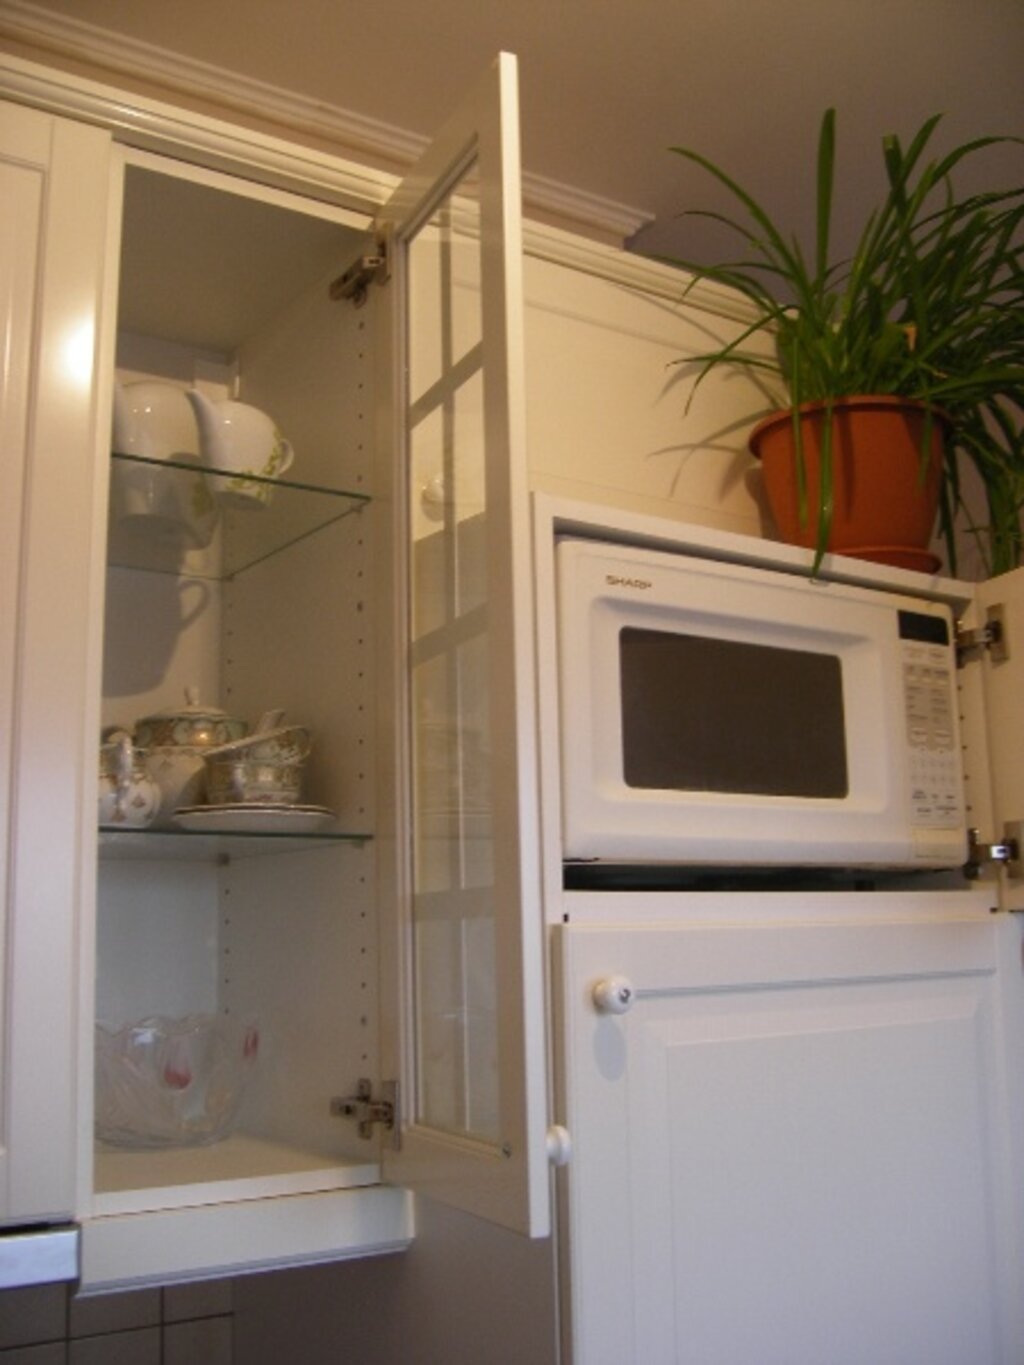 Можно ли ставить микроволновку на холодильник сверху. Микроволновая печь на холодильнике. Микроволновку на холодильник. Микроволновка на кухне. Микроволновка над холодильником.